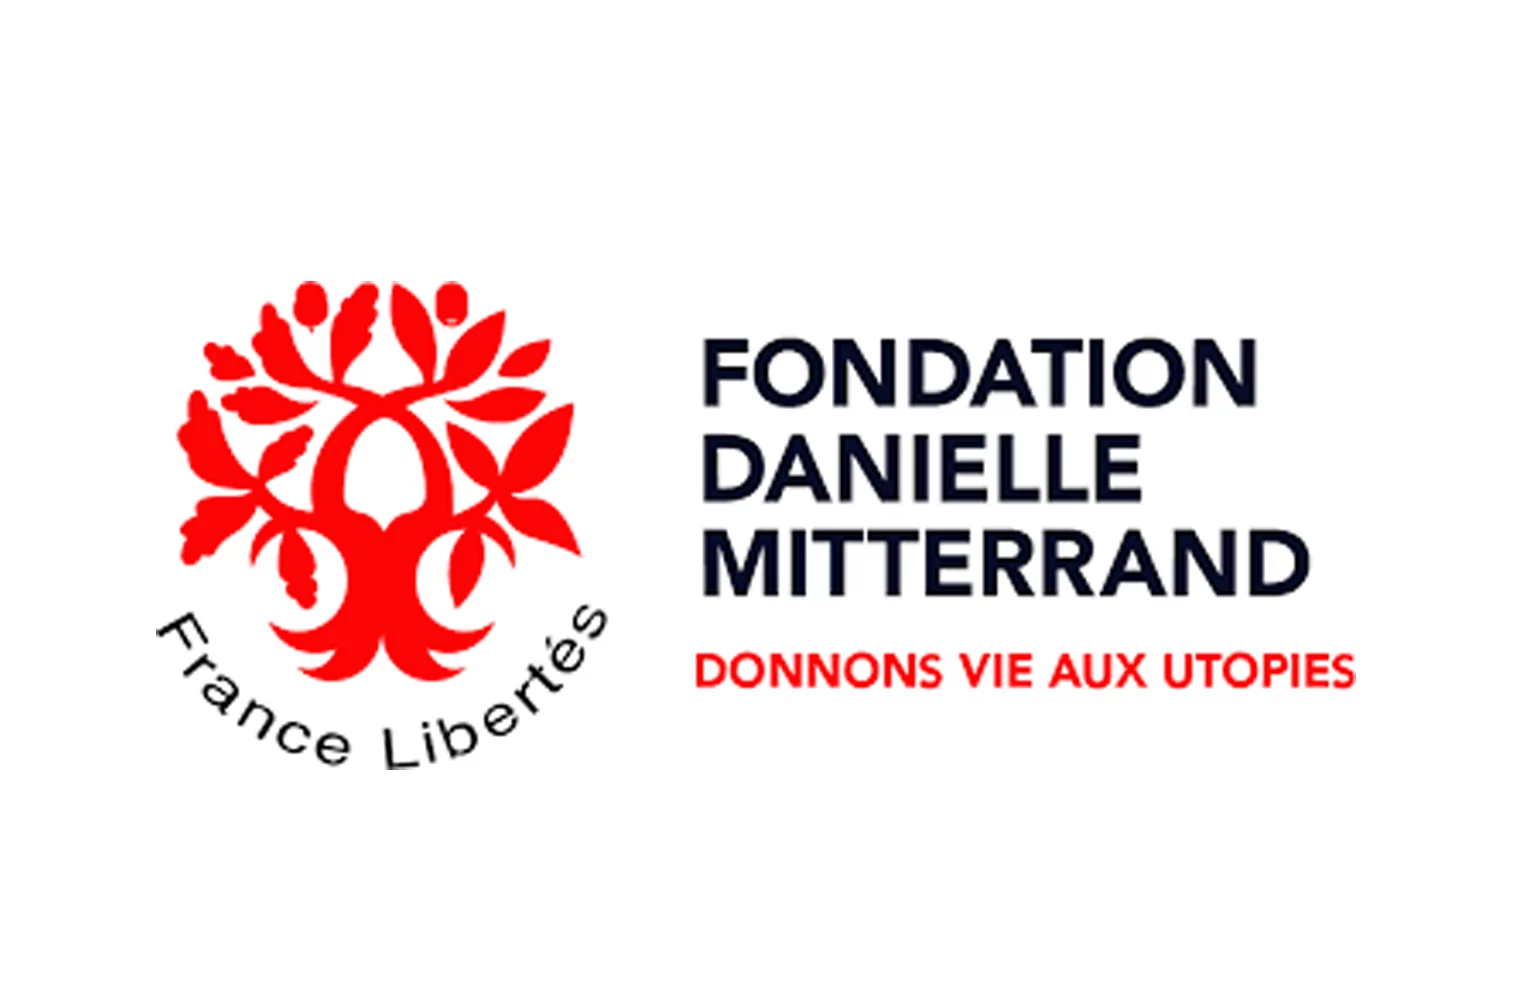 La Fondation Danielle Mitterrand offre un stage communication et relation aux donateurs, Paris, France